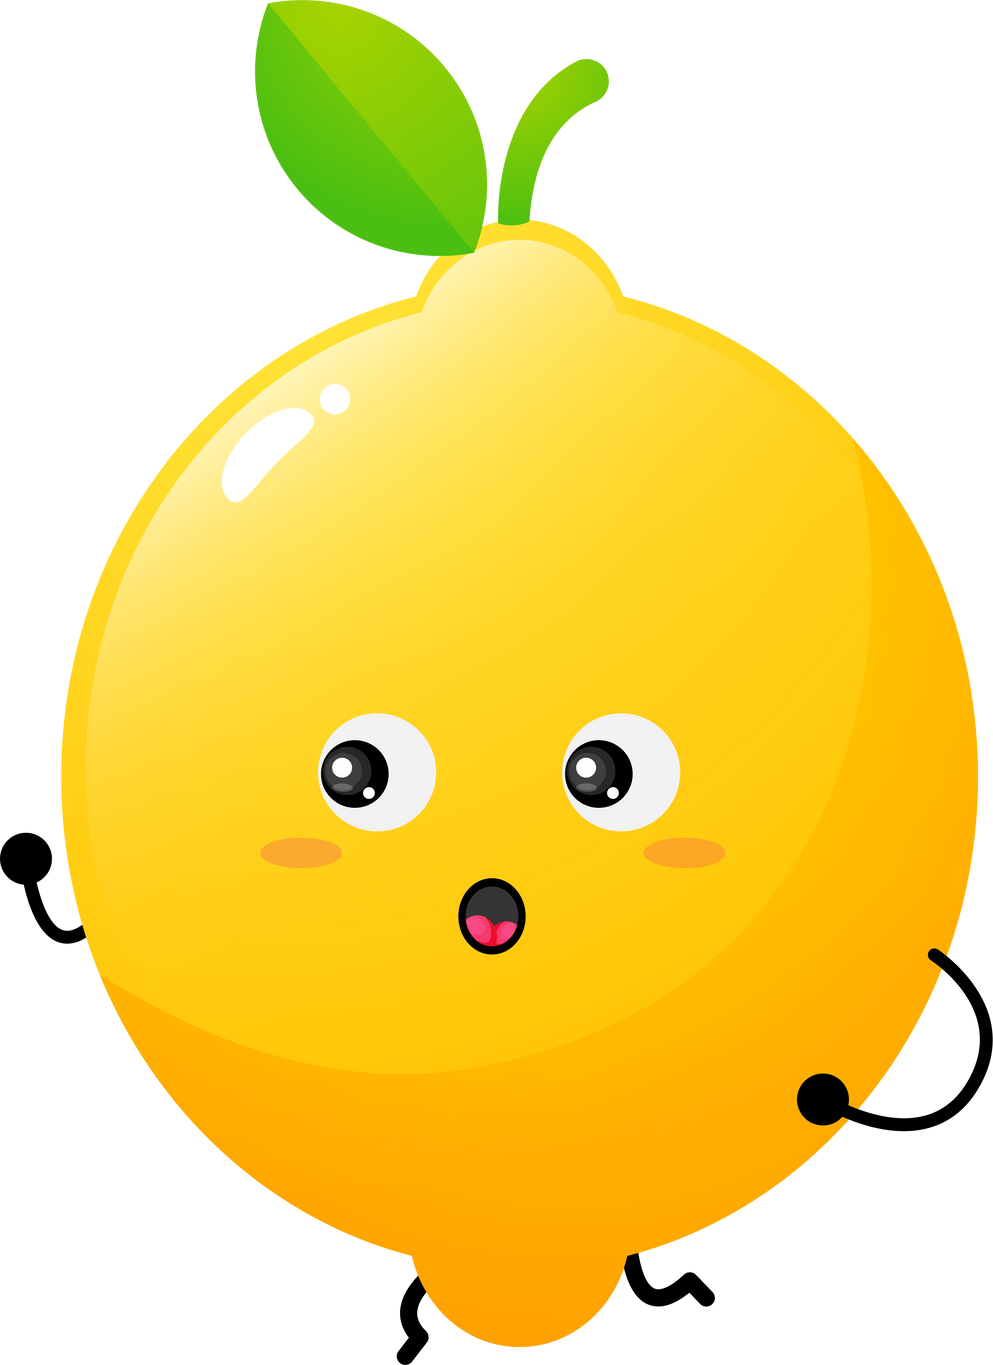 Cute lemon mascot character